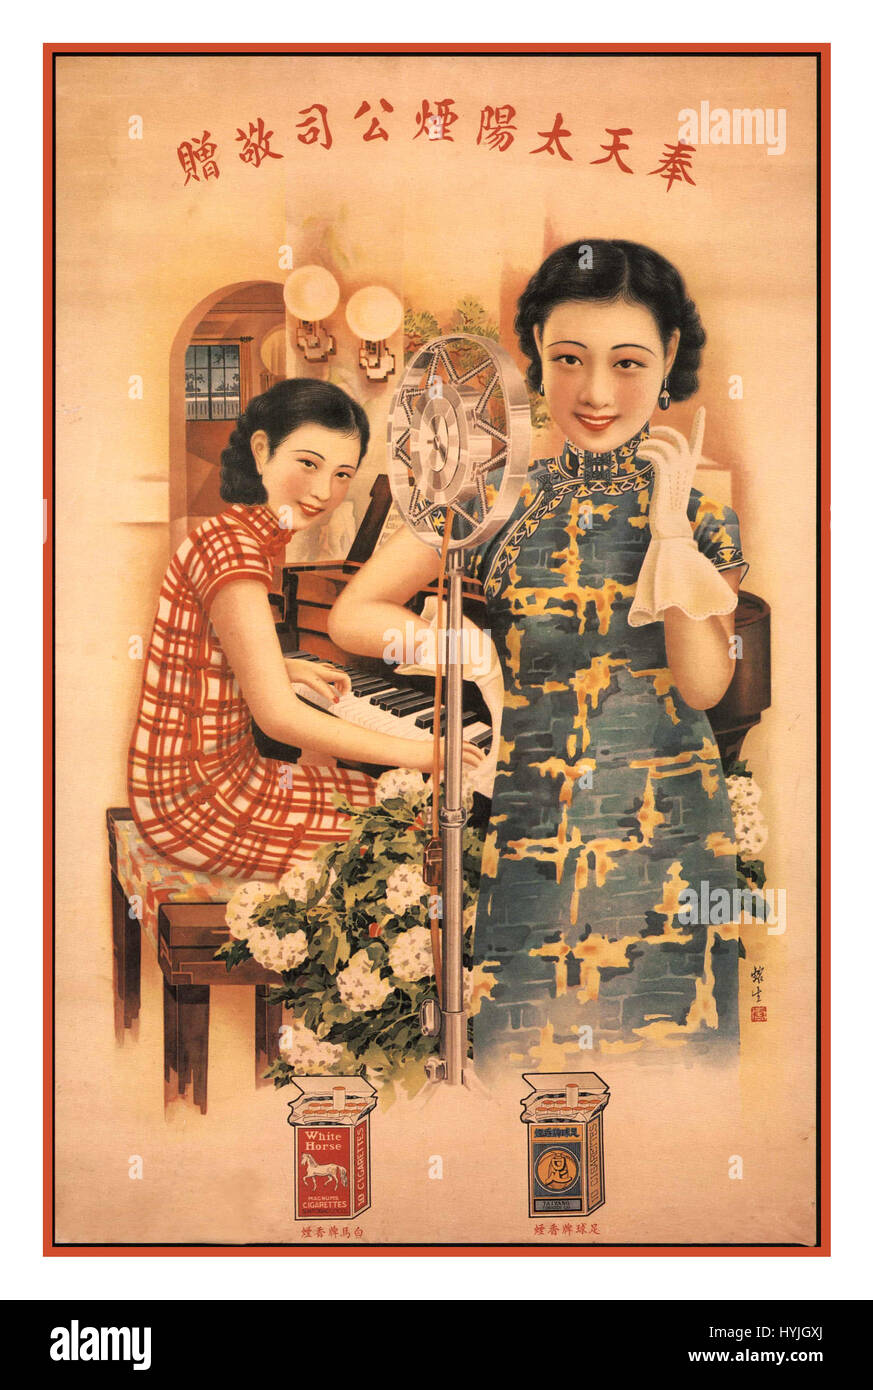 Klassische chinesische Zigarettenwerbung 1900 Jahre Ölgemalte Kunstdrucke Lithografieposter mit Zigarettenpackungen und zwei wunderschöne chinesische Damen in traditionell bescheidenen chinesischen Kleidern für Sun Tobacco Company Vintage China Werbetoster Stockfoto